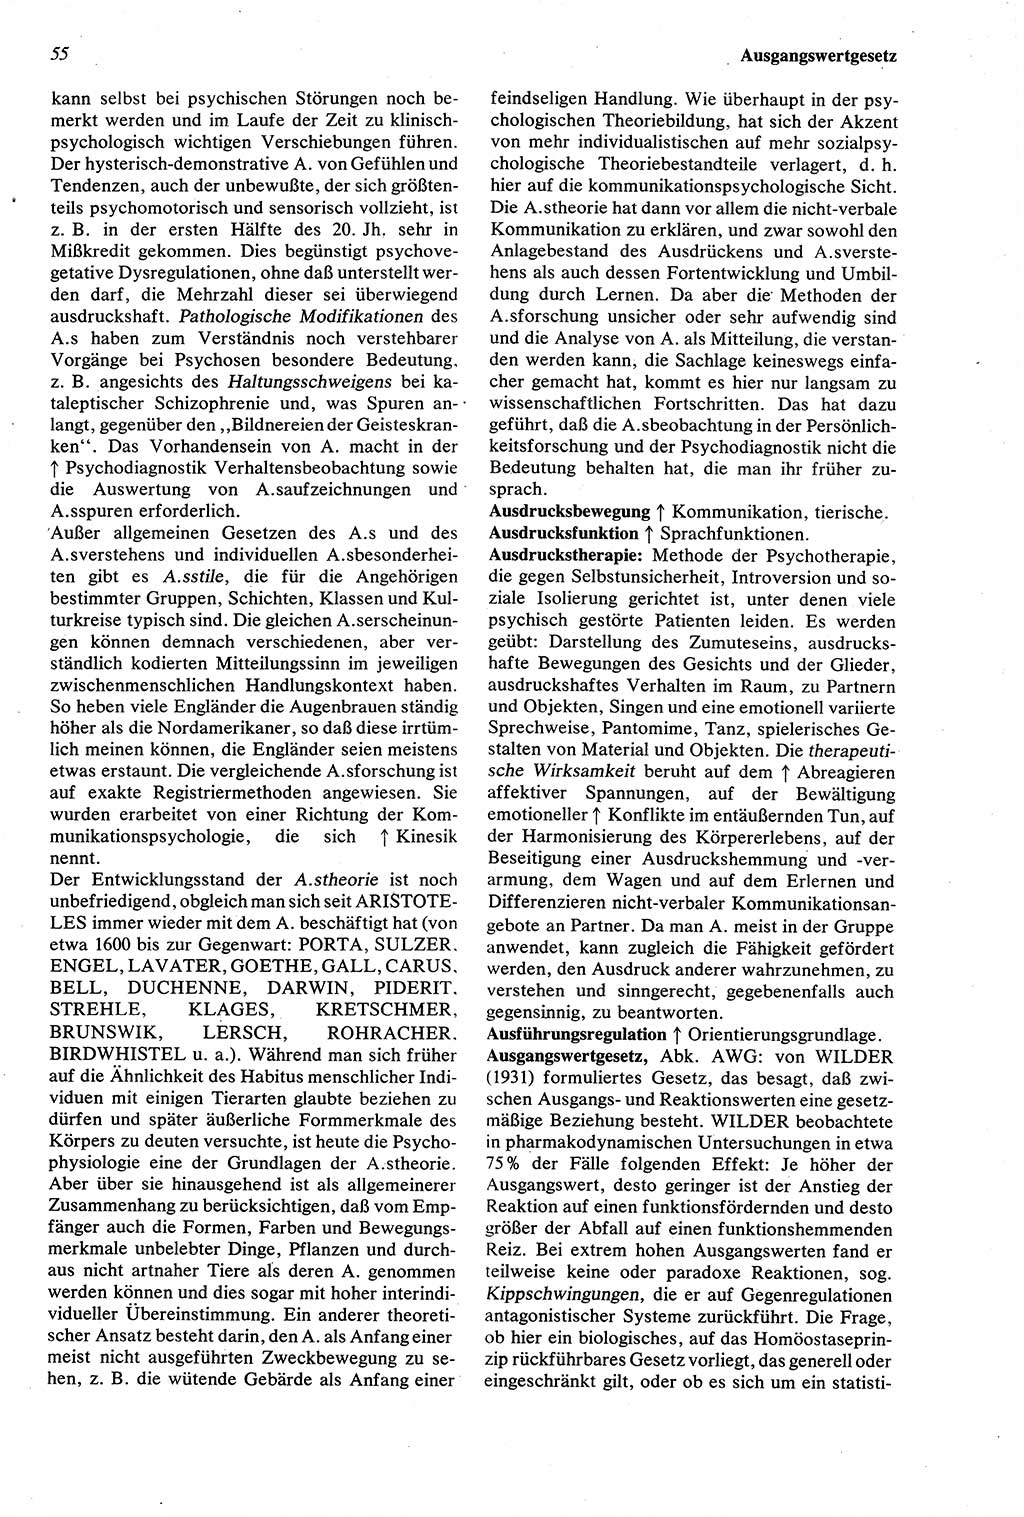 WÃ¶rterbuch der Psychologie [Deutsche Demokratische Republik (DDR)] 1976, Seite 55 (Wb. Psych. DDR 1976, S. 55)